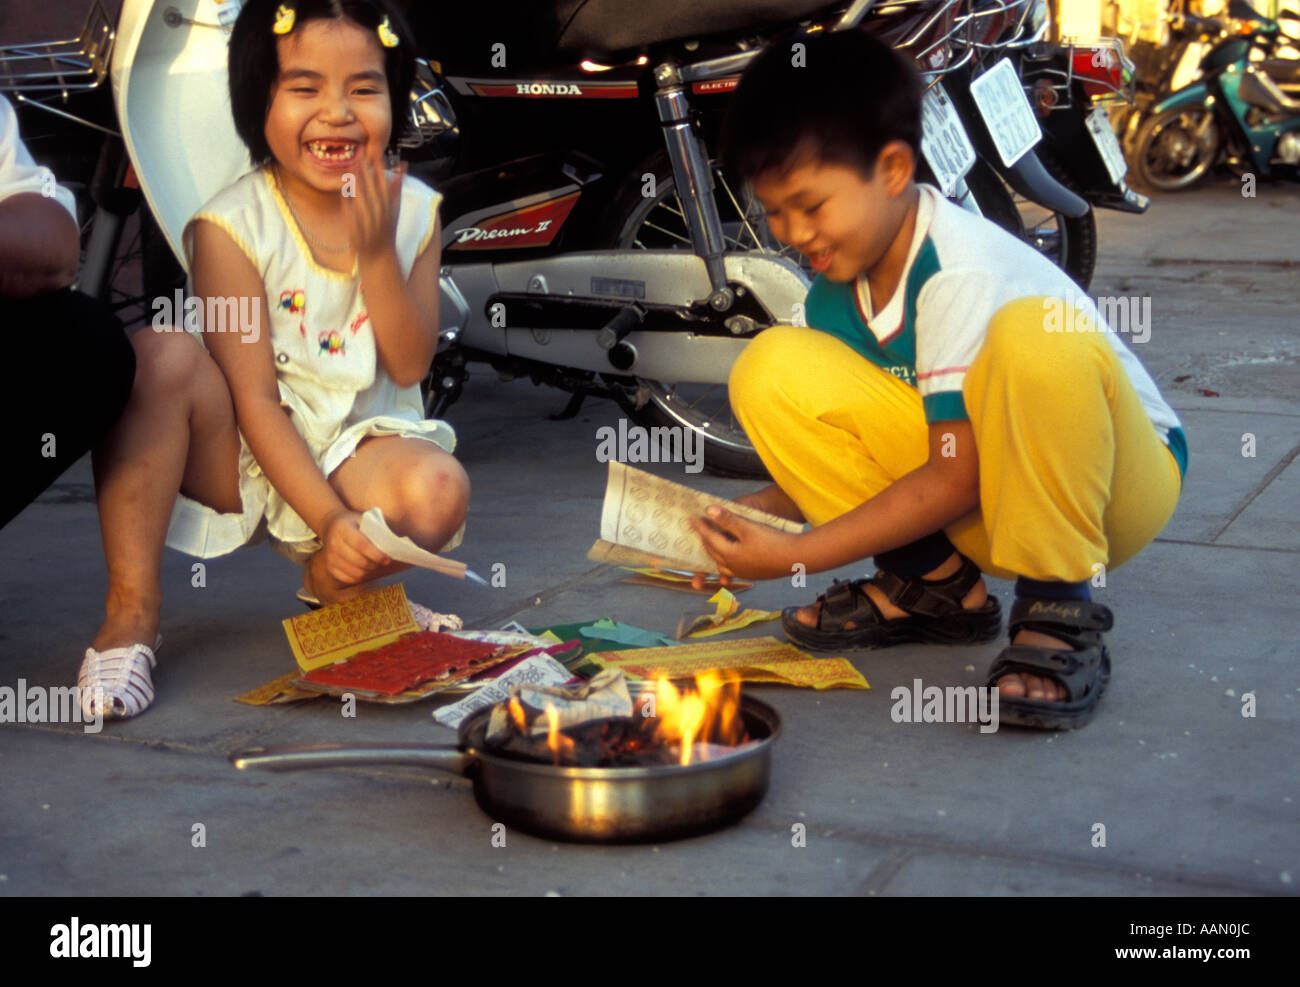 Children burning money in street, Nha Trang, Vietnam Stock Photo